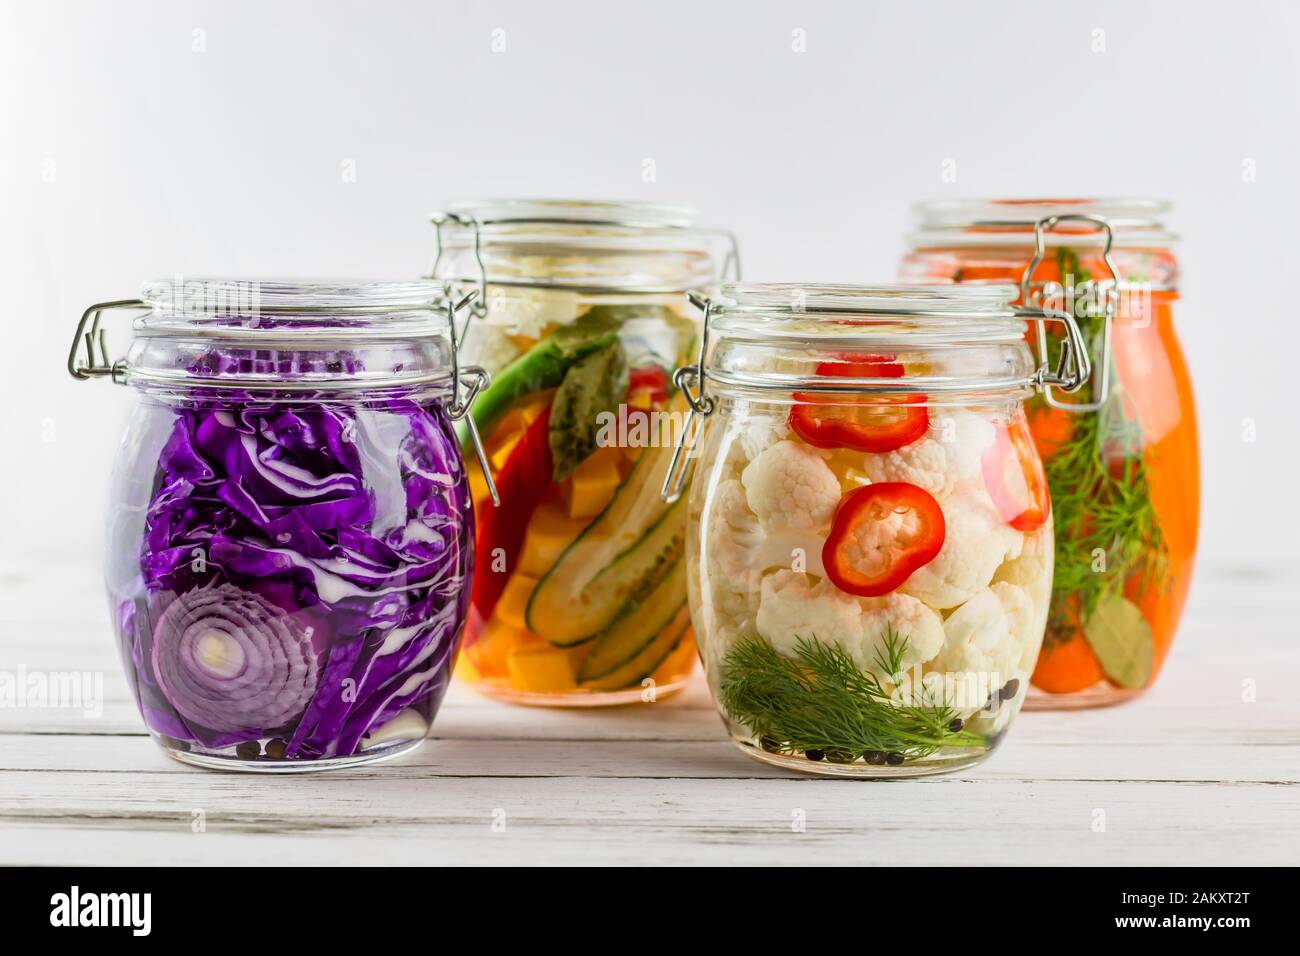 vasi di vetro di cavolo rosso fermentato, cavolfiore, carote, verdure su un fondo leggero. fermentazione è una fonte di probiotics. Foto Stock